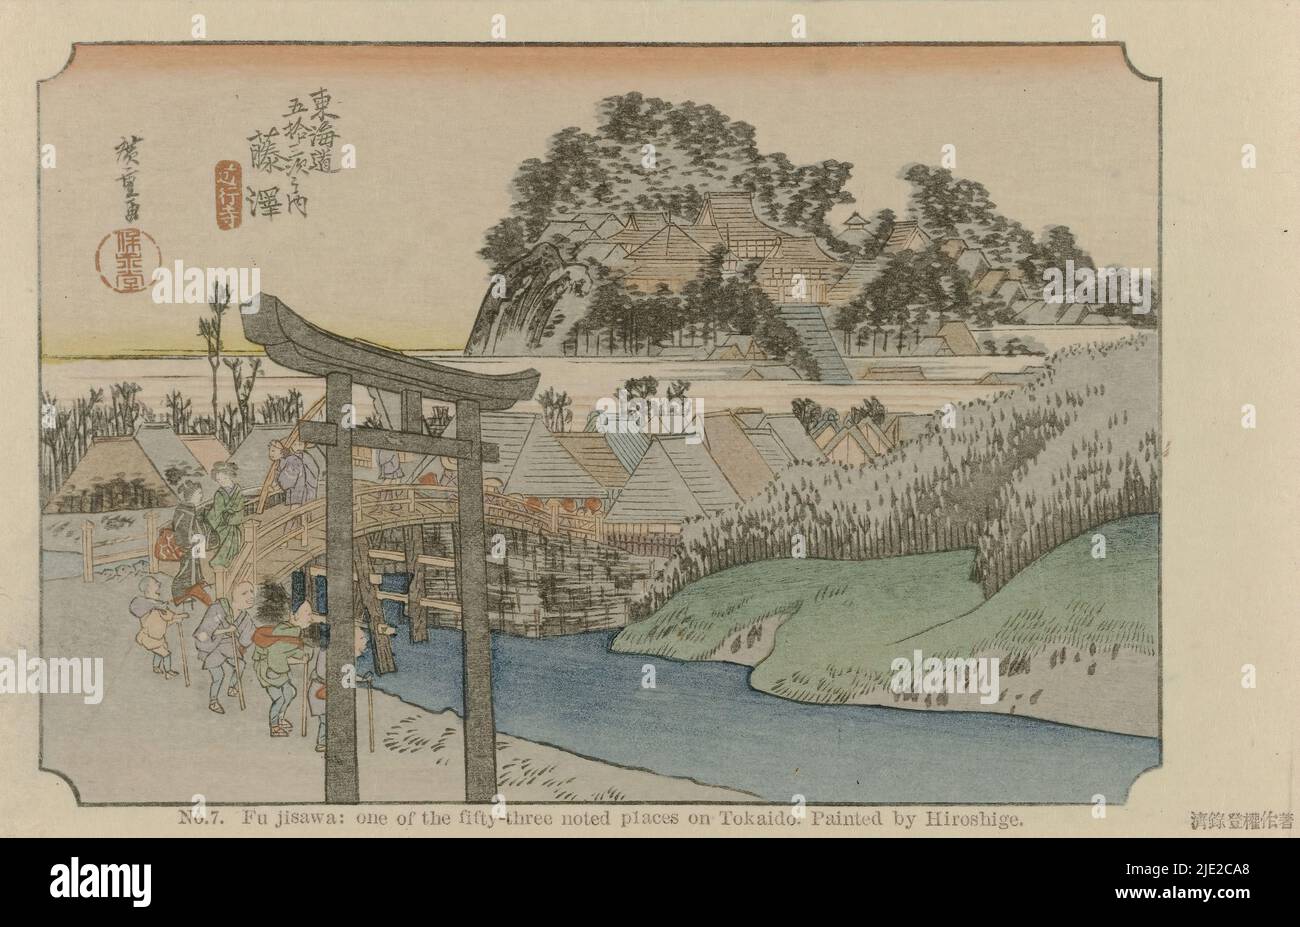 Fujisawa, no 7. Fujisawa: Un des cinquante-trois endroits notés sur Tokaido. Peint par Hiroshige (titre sur objet), le Tôkaidô de Hiroshige (titre de la série), Hiroshige no fude Tôkaidô (titre de la série sur objet), les voyageurs traversent un petit pont en direction d'un village, au premier plan une porte d'entrée (torii)., après impression par: Hiroshige (I) , Utagawa (objet mentionné), éditeur: Fujisawa Bunjirô, (mentionné sur l'objet), Japon, 1906, carton, coupe de bois de couleur, hauteur 90 mm × largeur 141 mm Banque D'Images